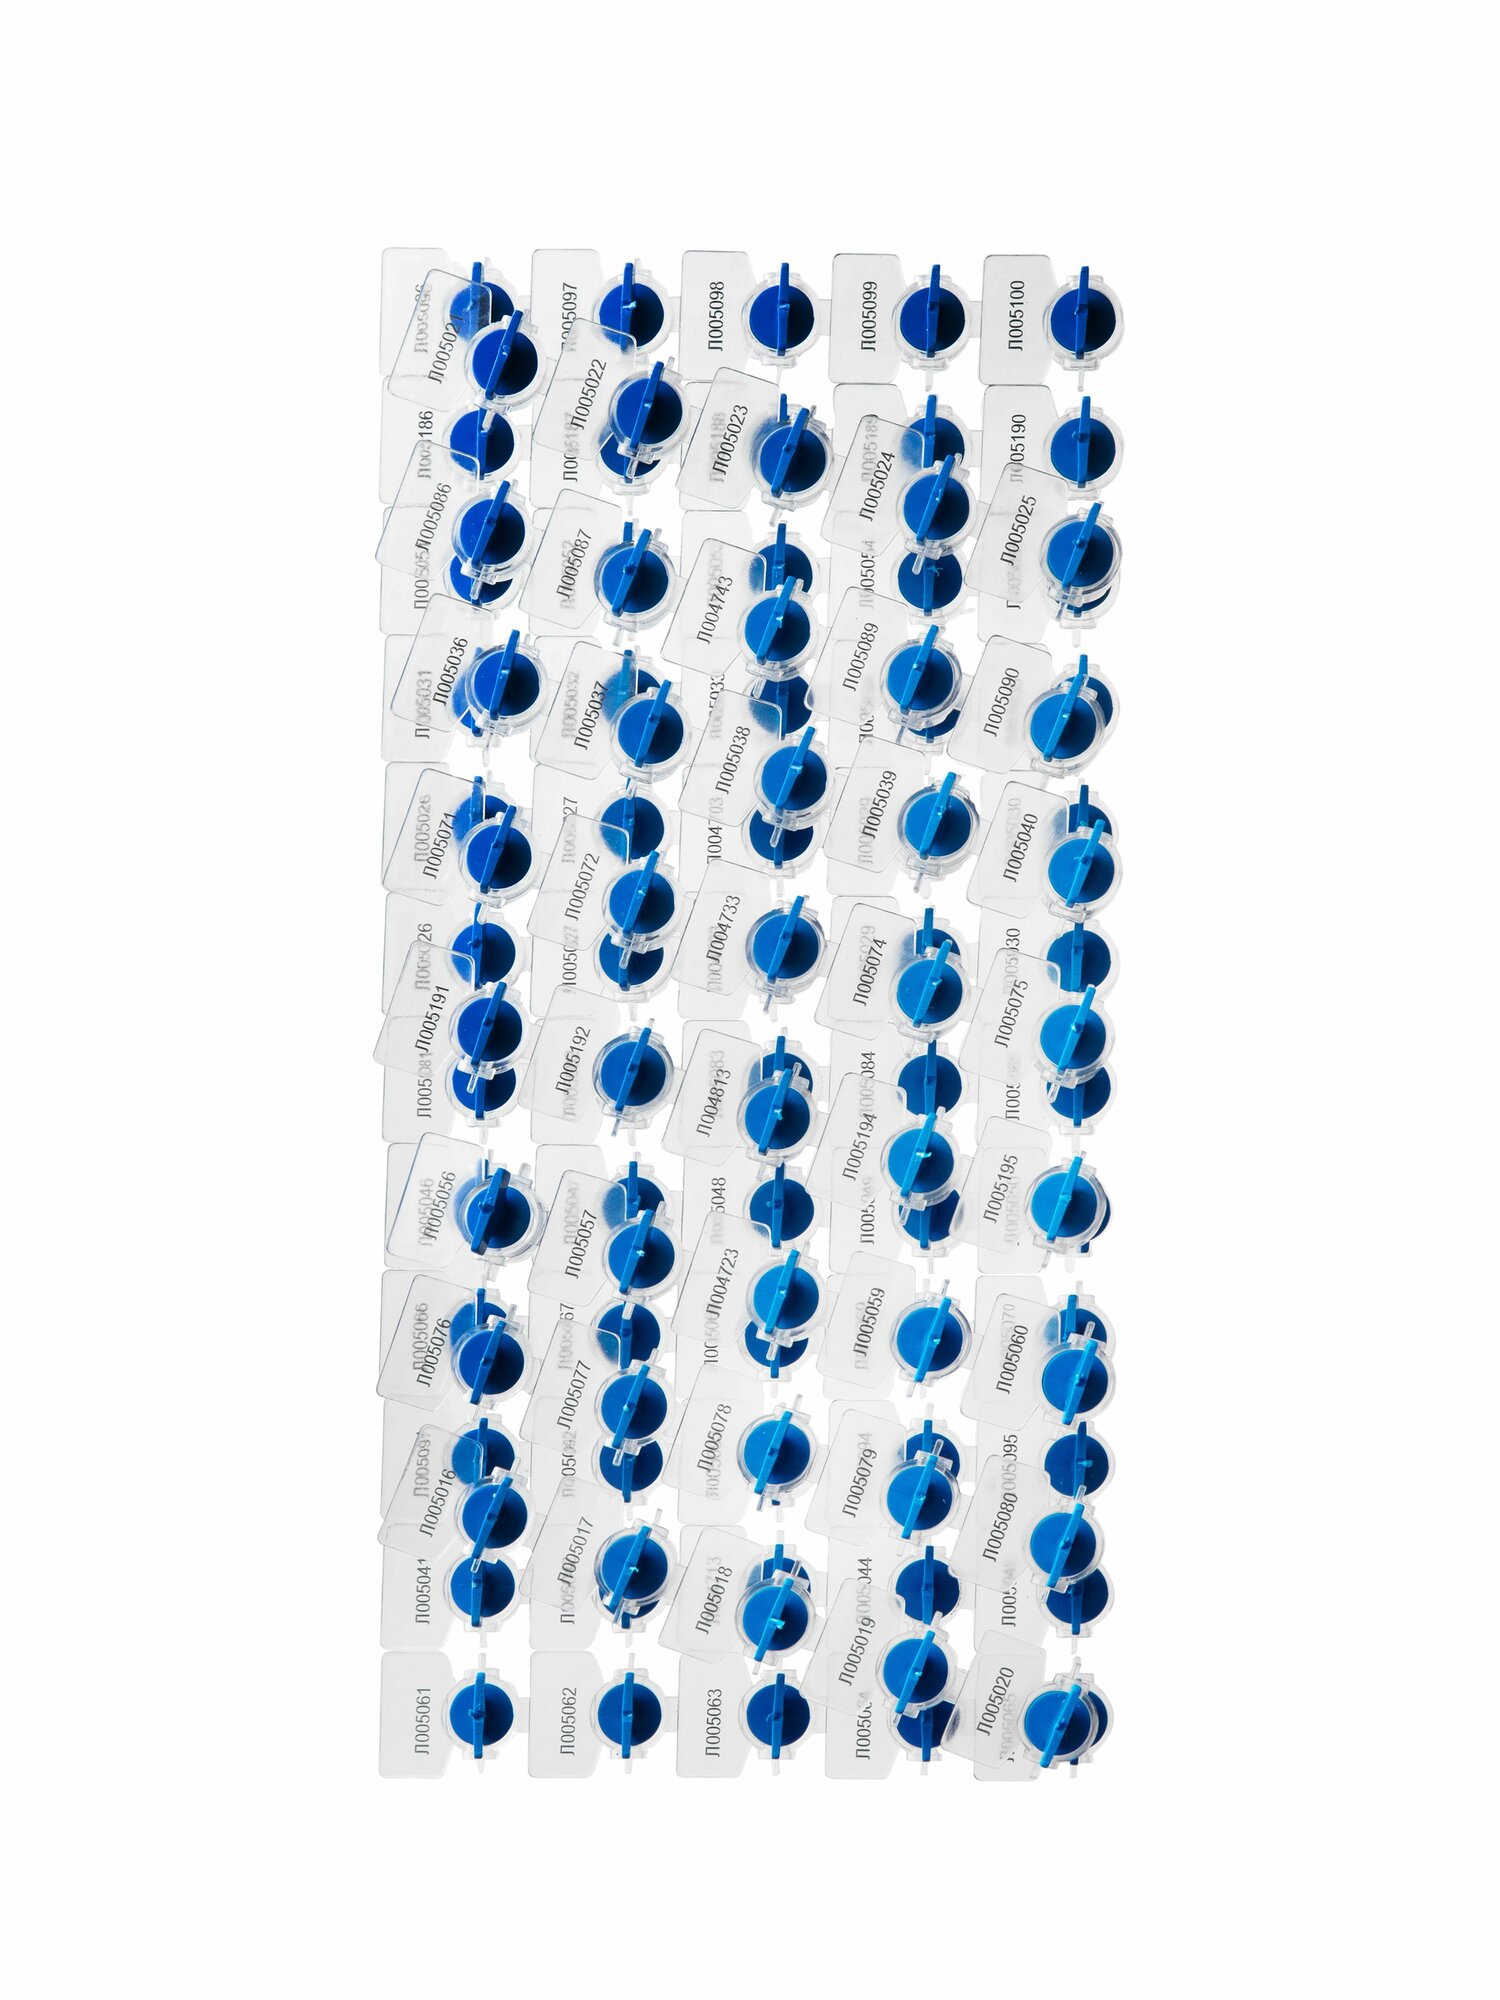 Пломба пластиковая роторная для счетчиков света и воды рх-3, синяя (упаковка 100 штук)